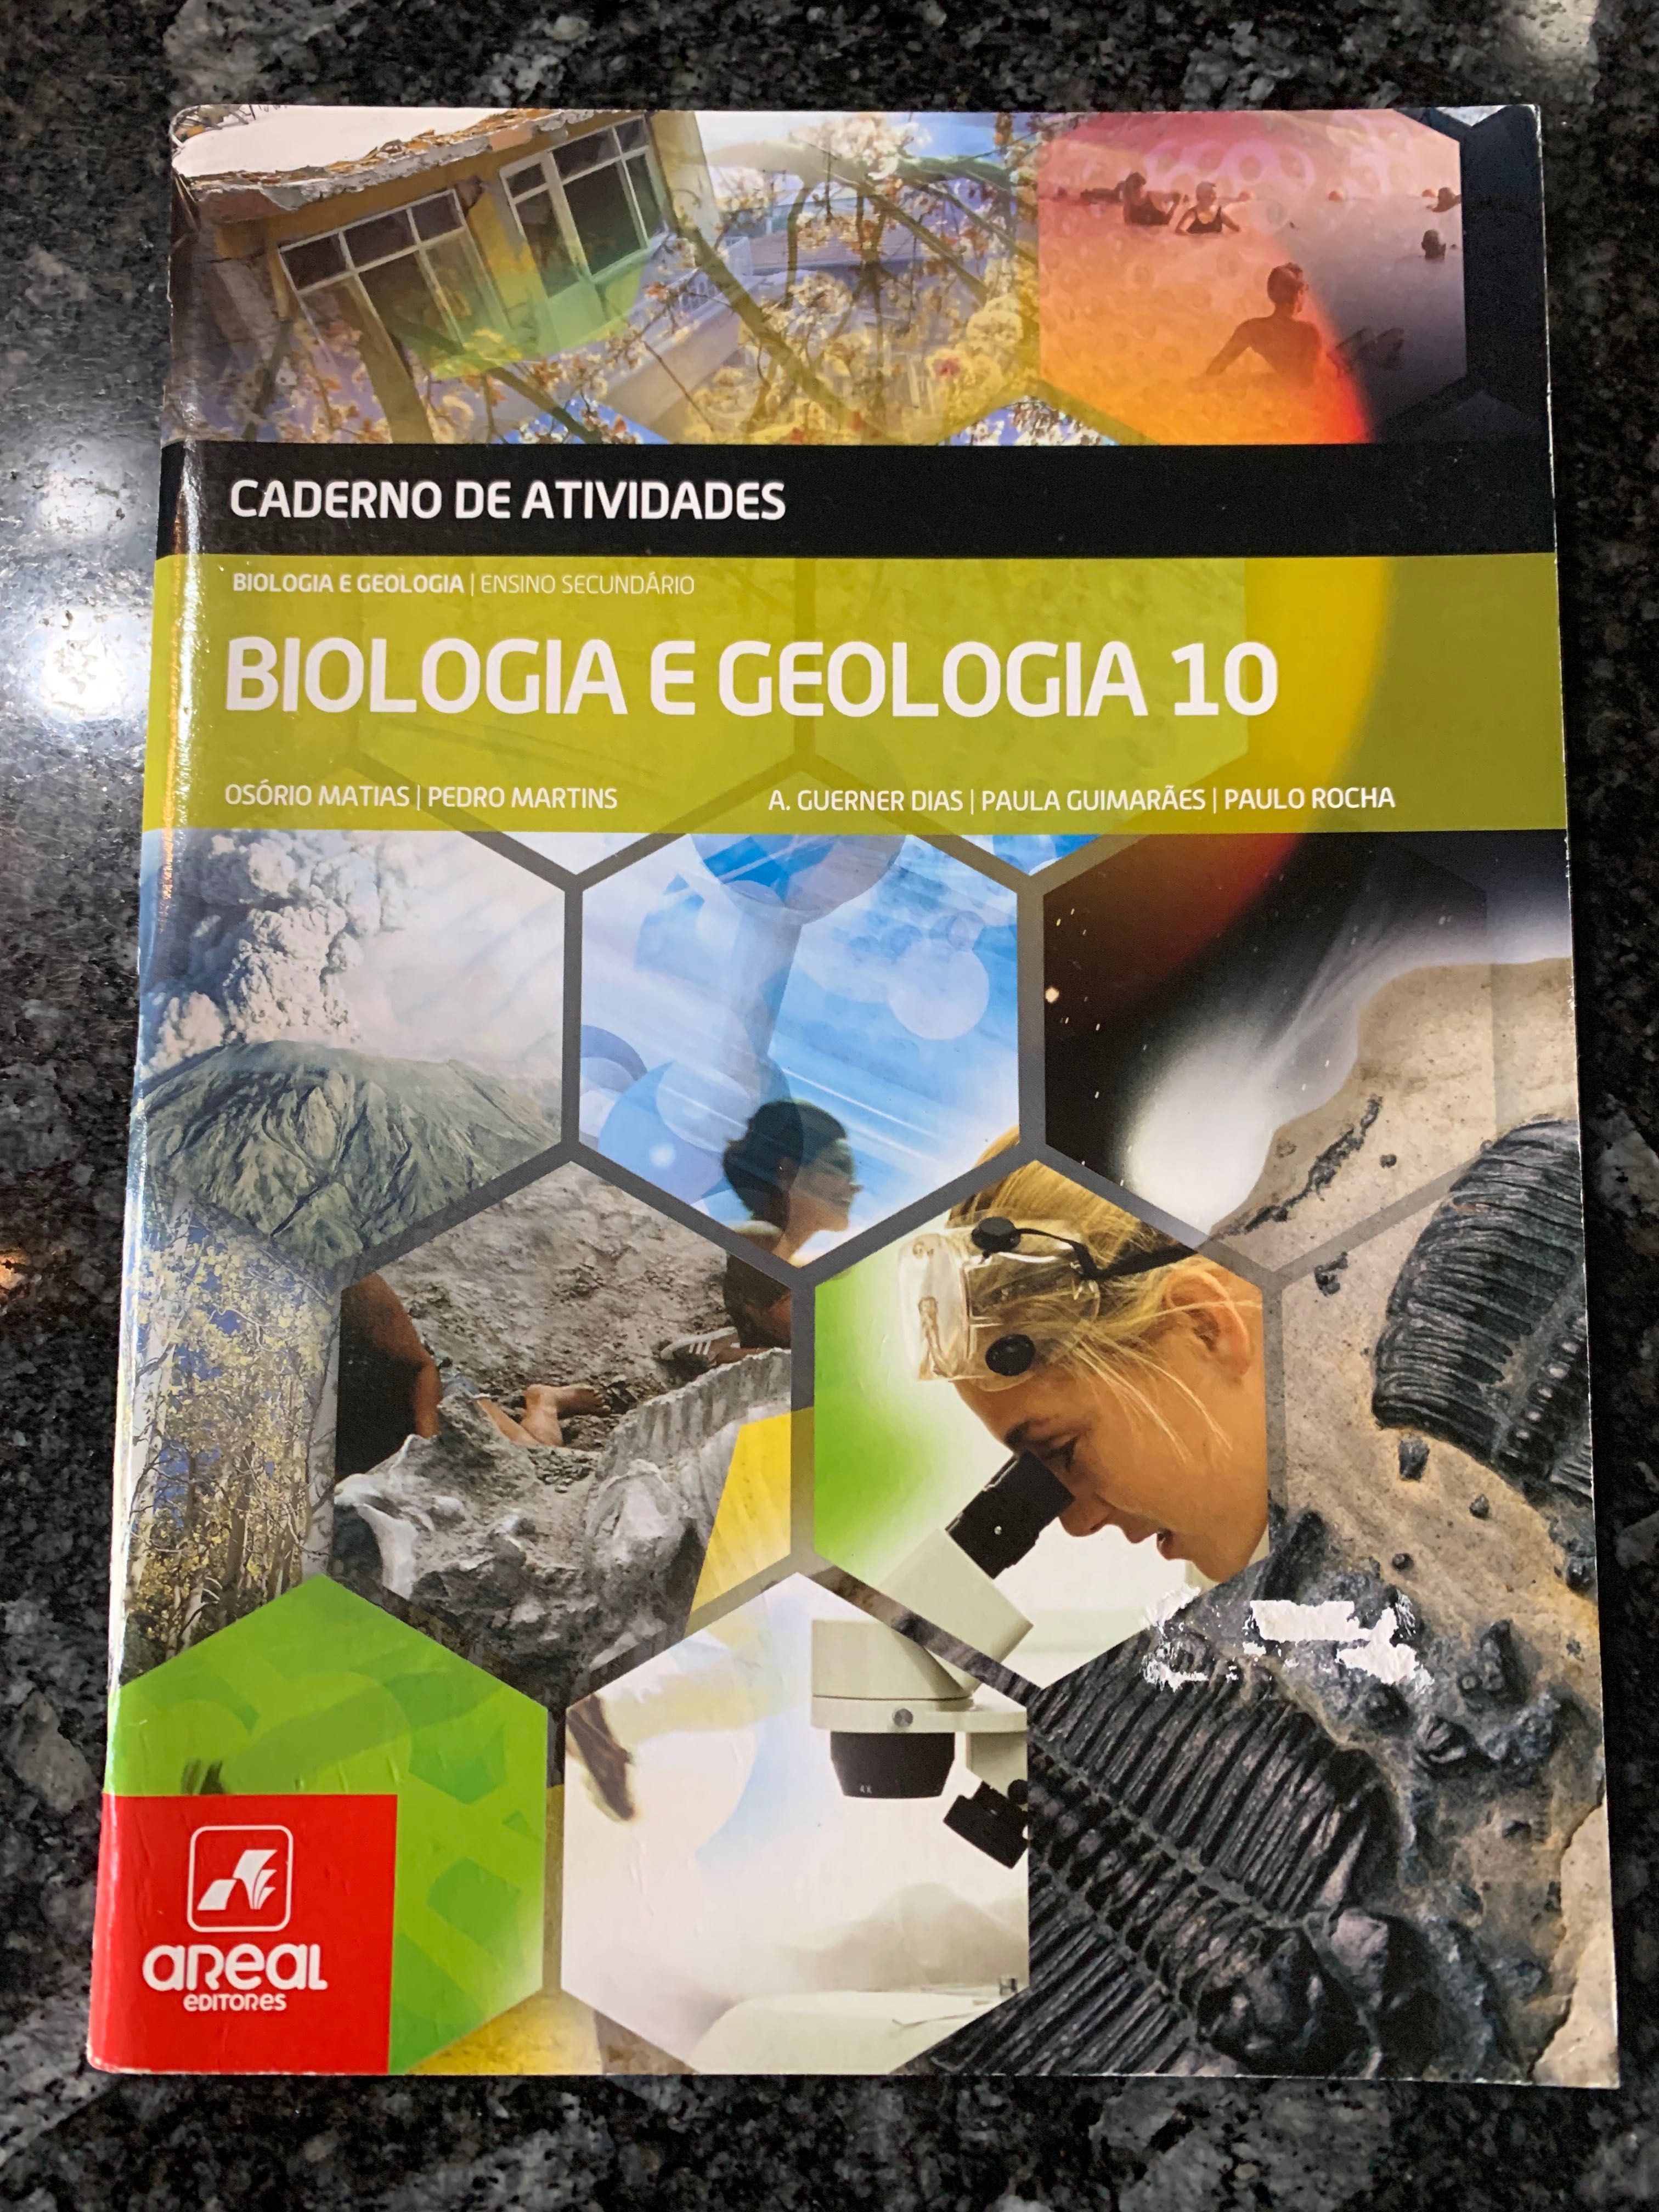 Caderno de atividades Biologia e Geologia 10 Areal Editores